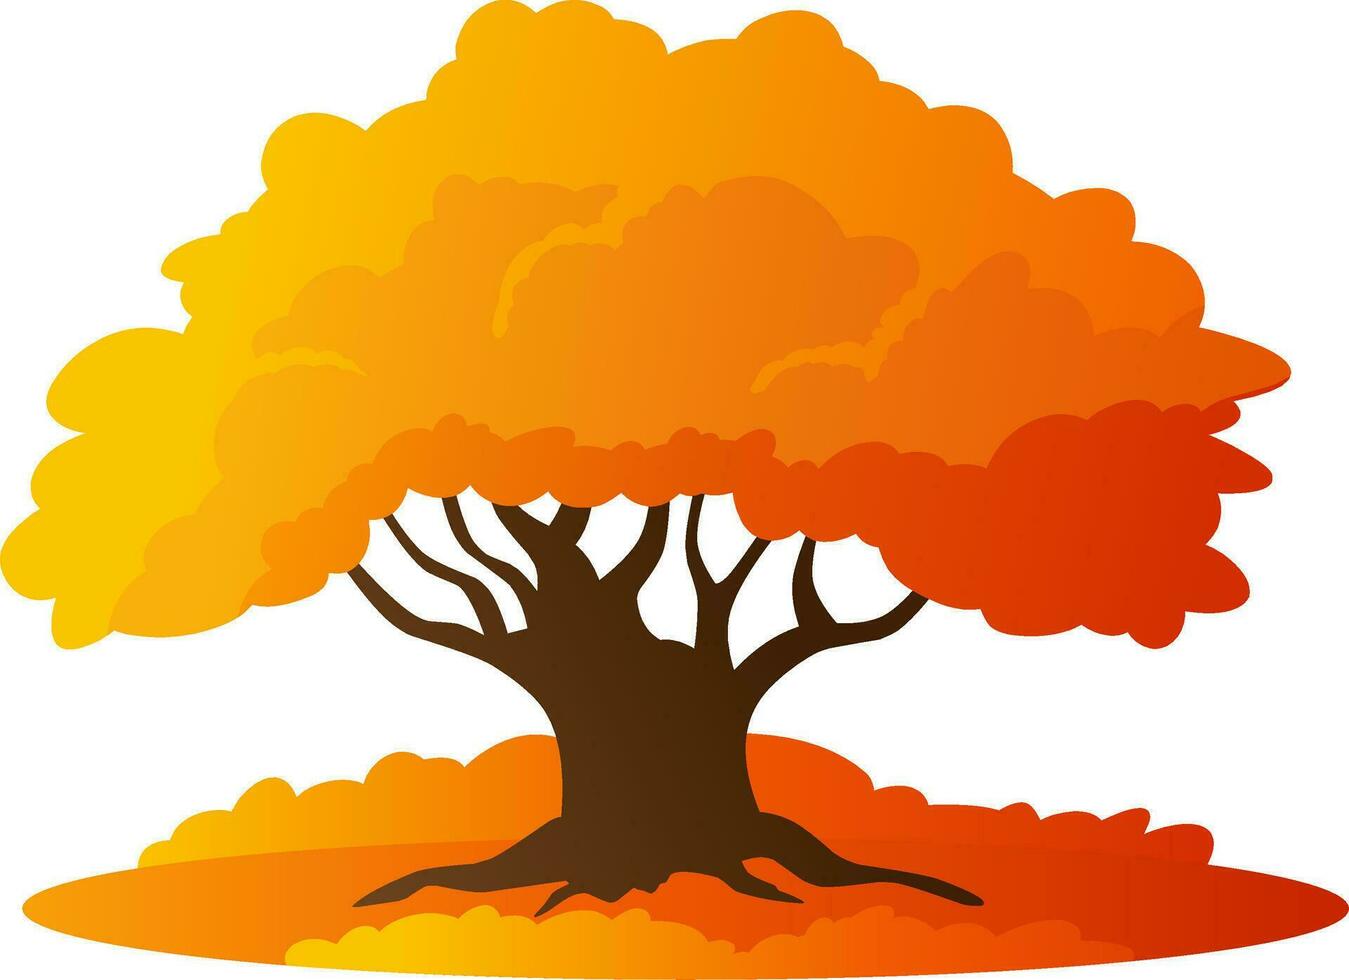 höst ek träd vektor illustration. falla säsong ek träd design med buske och gräs. höst grafisk resurs för ikon, tecken, symbol eller dekoration. falla säsong träd för skog, växt eller miljö